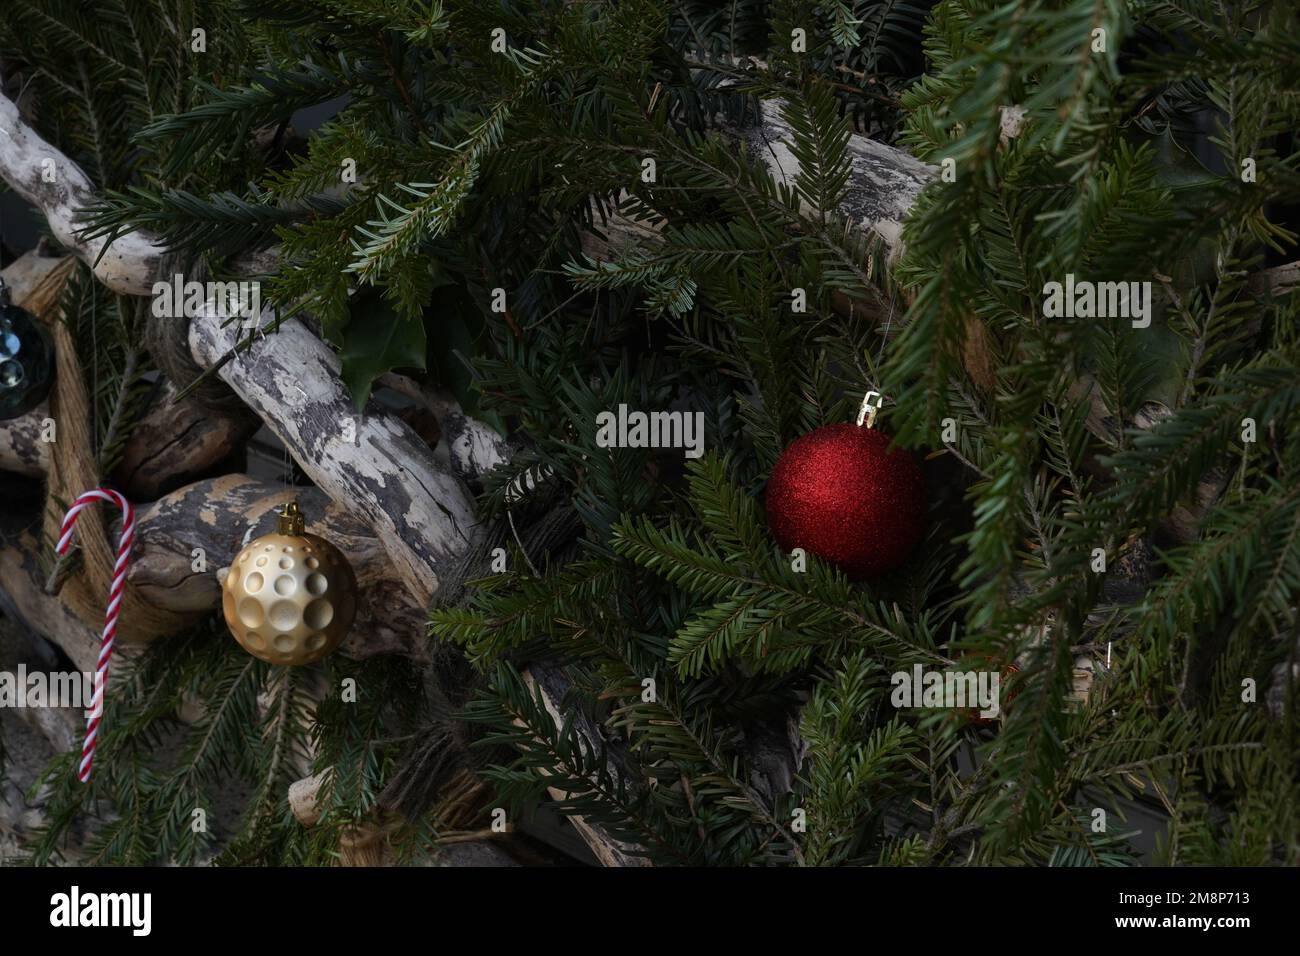 Weihnachtsbälle und weihnachtliche Zuckerstangen sind als saisonale Dekoration im Freien auf Nadelzweigen angeordnet. Stockfoto